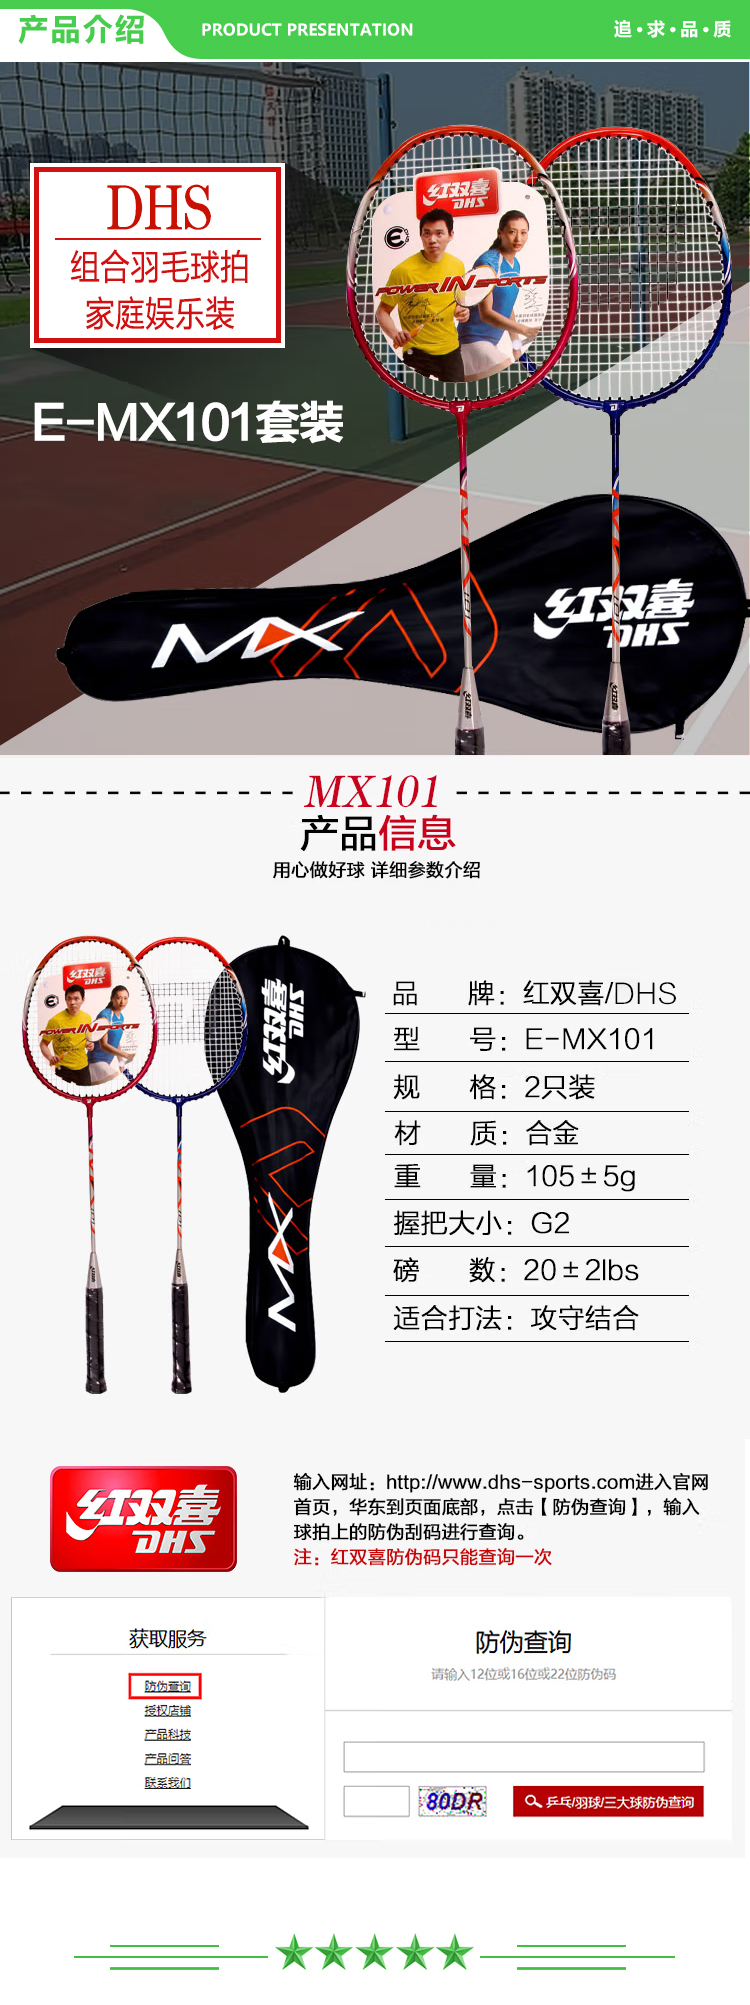 红双喜 DHS E-MX101 羽毛球拍对拍 已穿线 .jpg